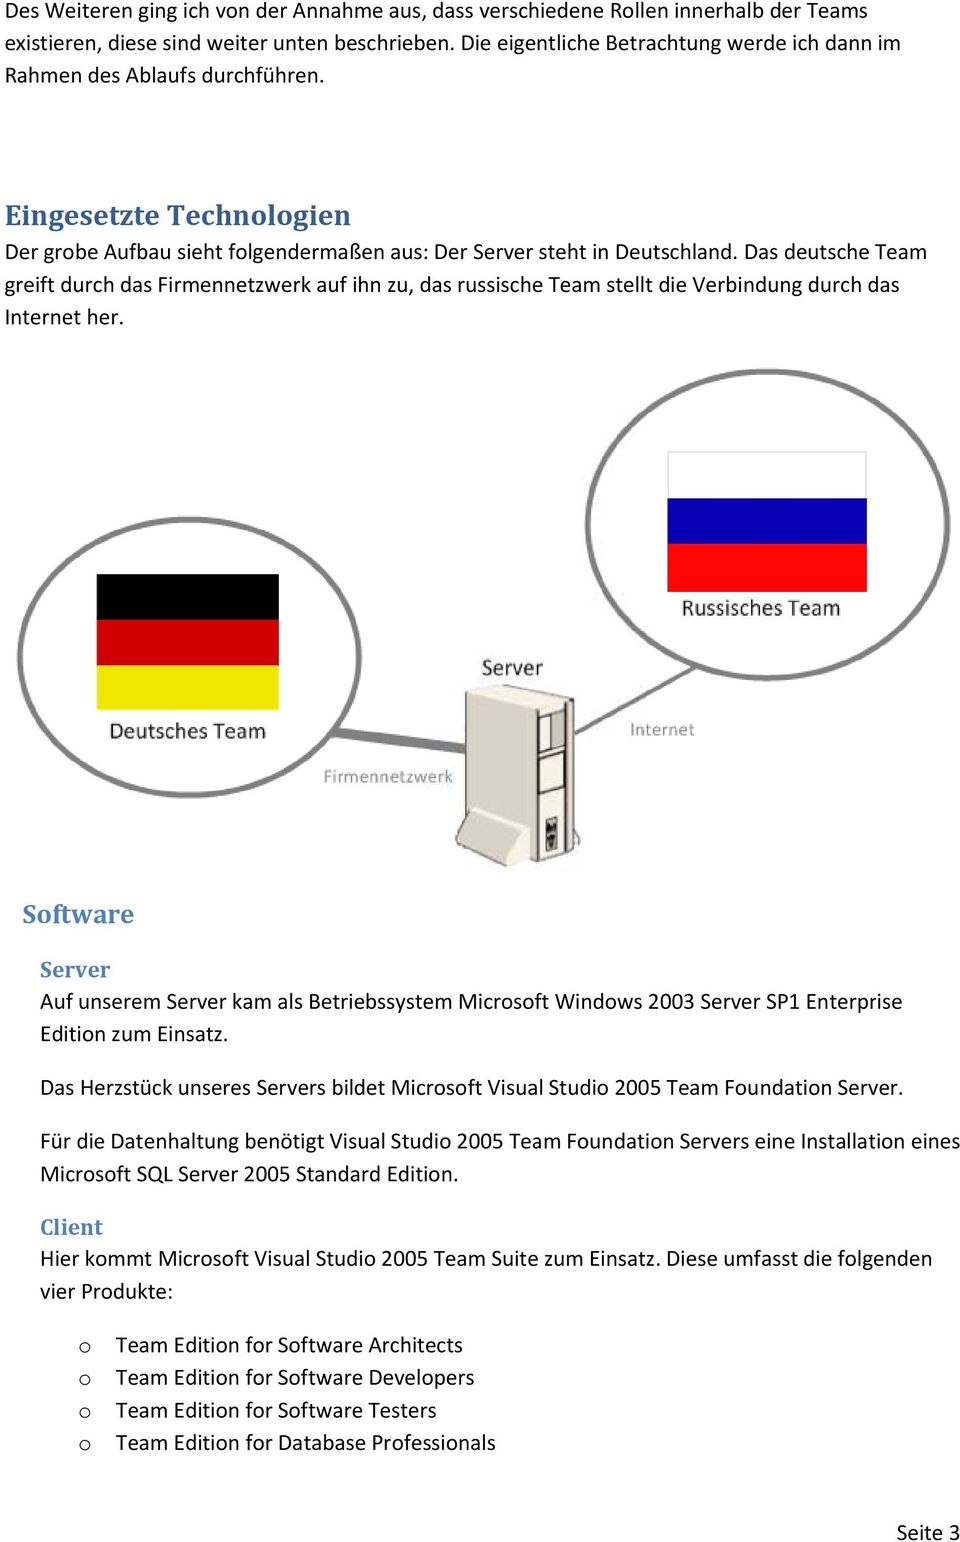 Das deutsche Team greift durch das Firmennetzwerk auf ihn zu, das russische Team stelltt die Verbindung durch das Internet her.